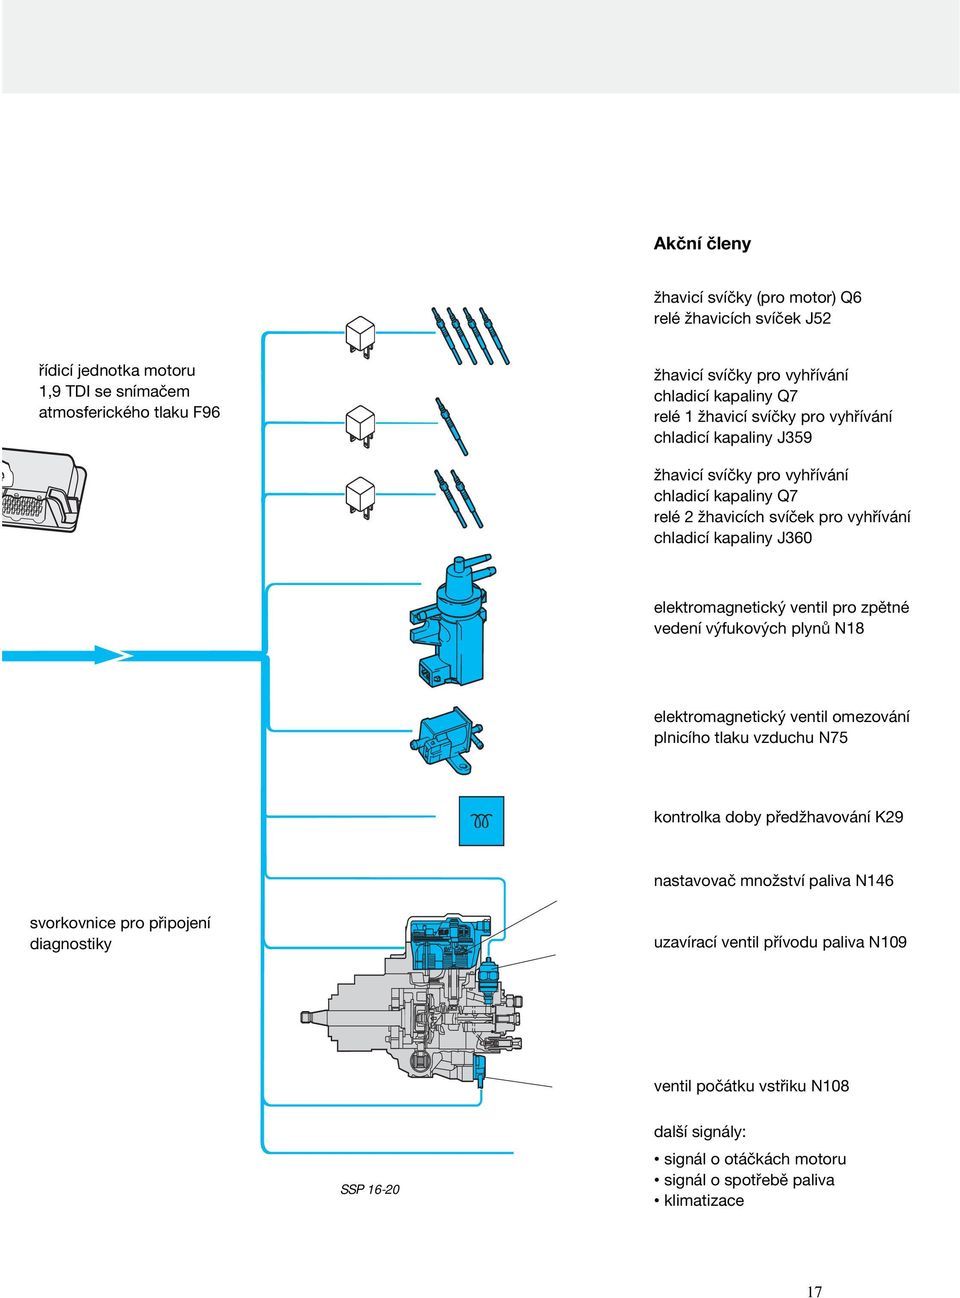 elektromagnetický ventil pro zpětné vedení výfukových plynů N18 elektromagnetický ventil omezování plnicího tlaku vzduchu N75 kontrolka doby předžhavování K29 nastavovač množství